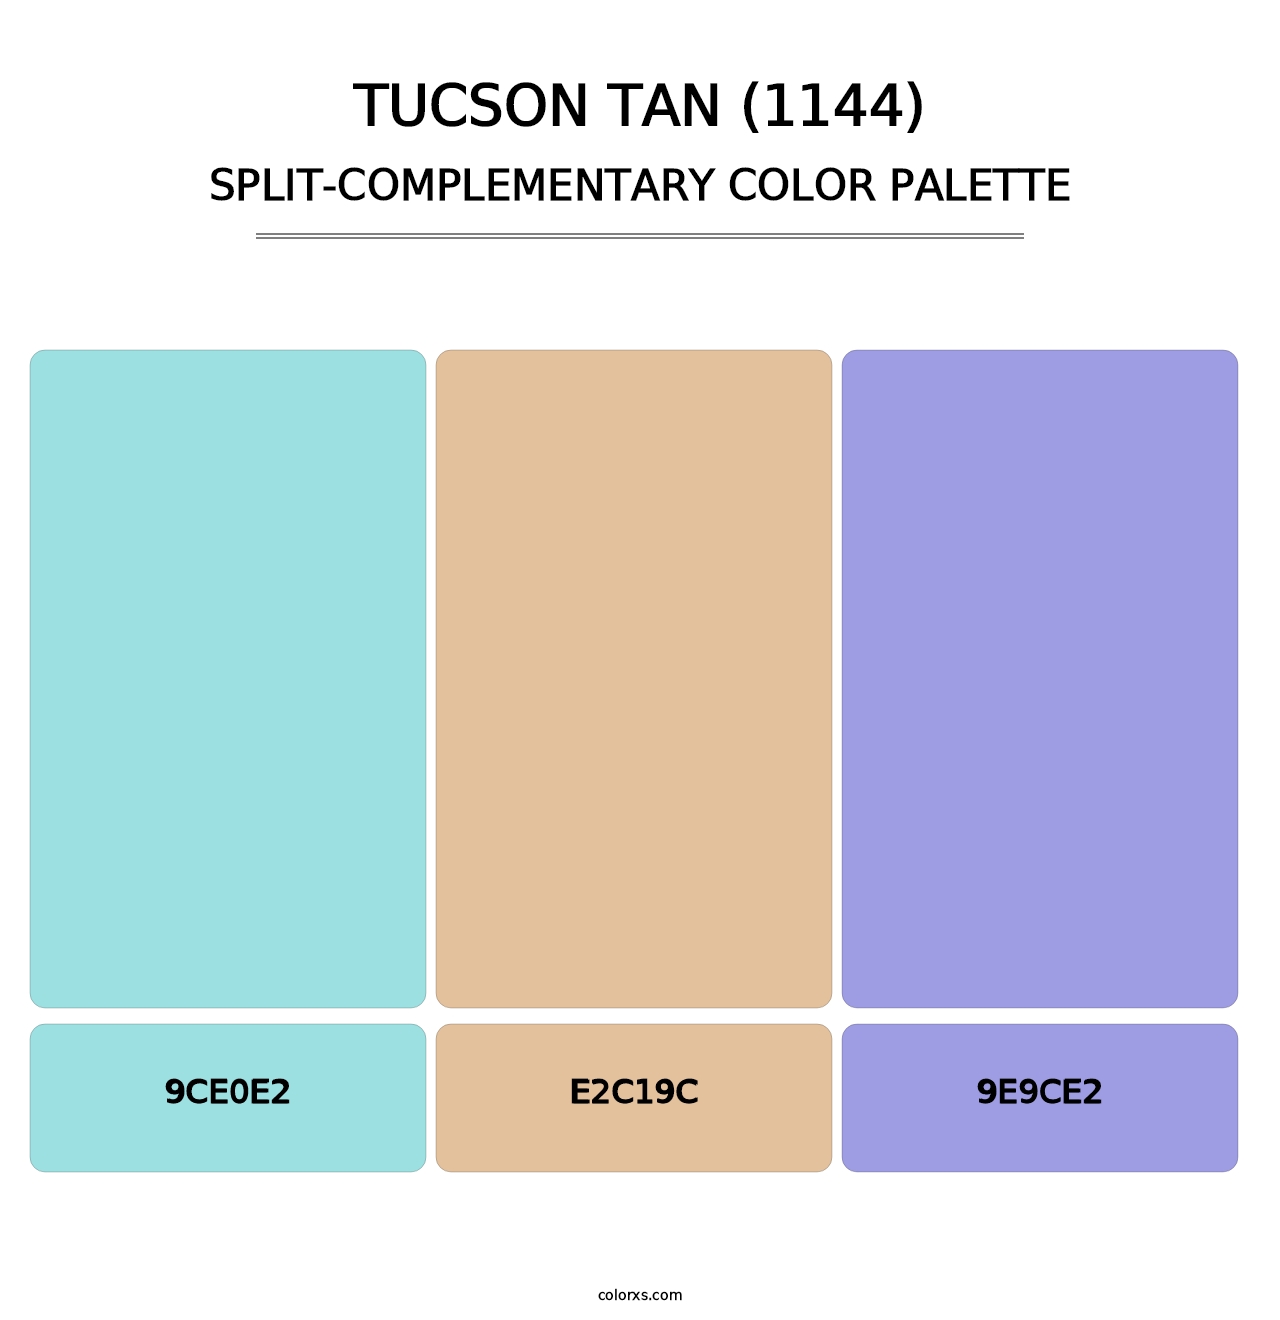 Tucson Tan (1144) - Split-Complementary Color Palette